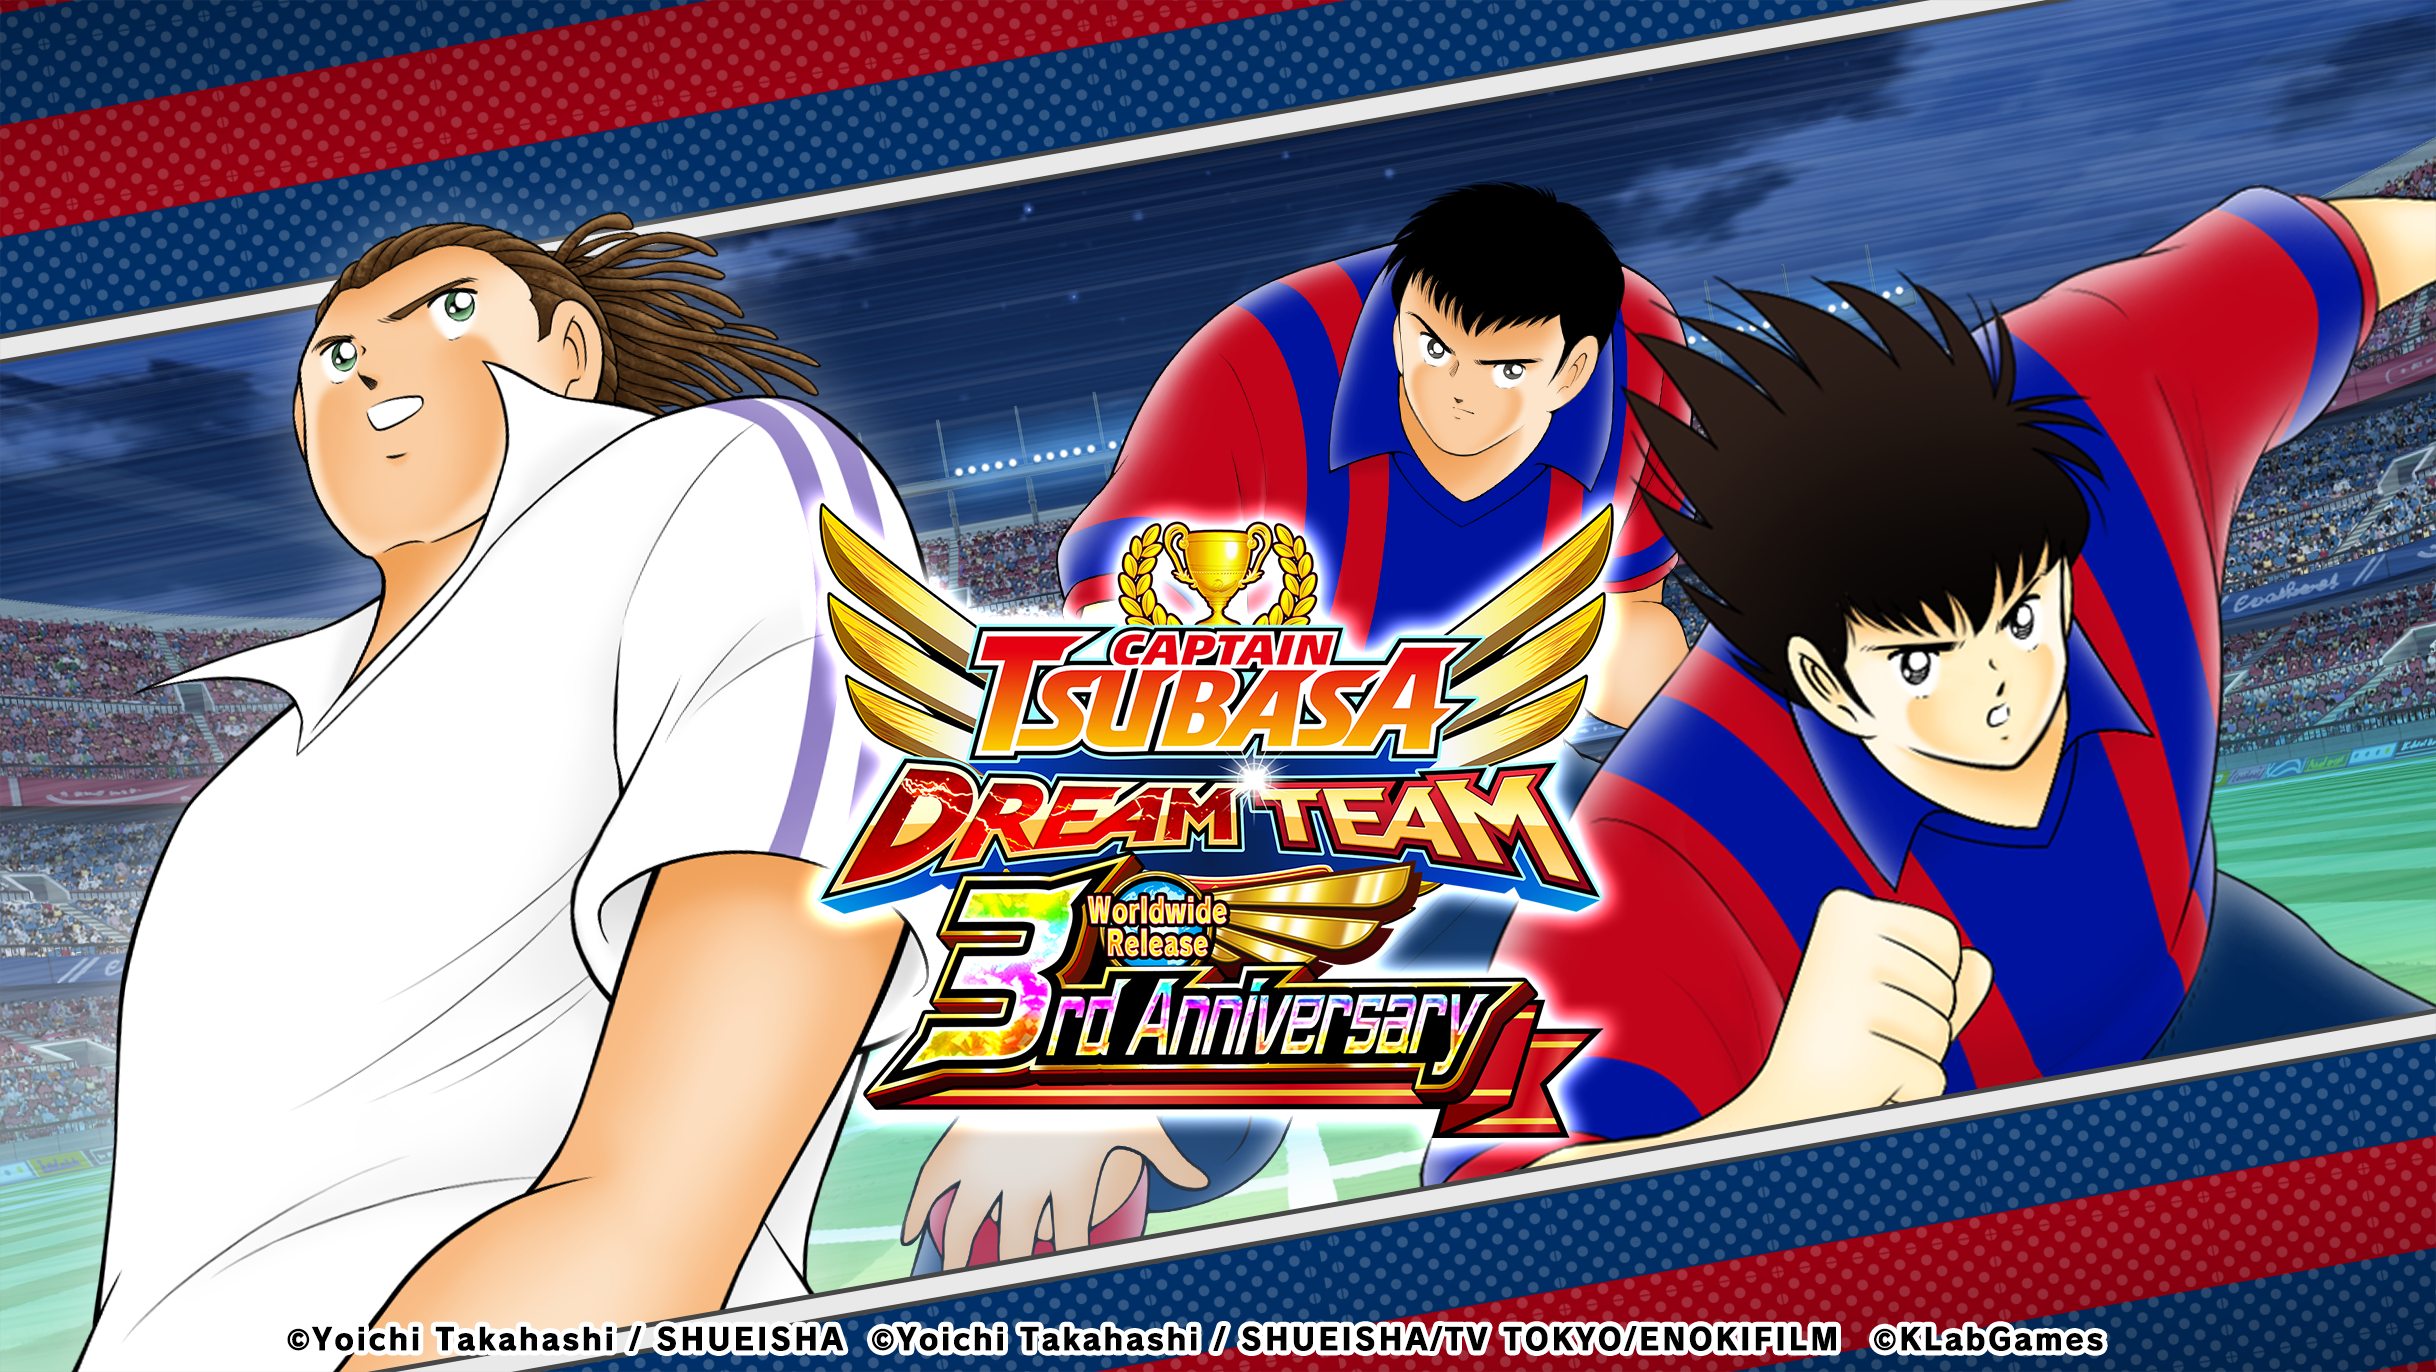 เกม “กัปตันซึบาสะ: ดรีมทีม (Captain Tsubasa: Dream Team)” ฉลองครบรอบ 3 ปี ทั่วโลกวันนี้!